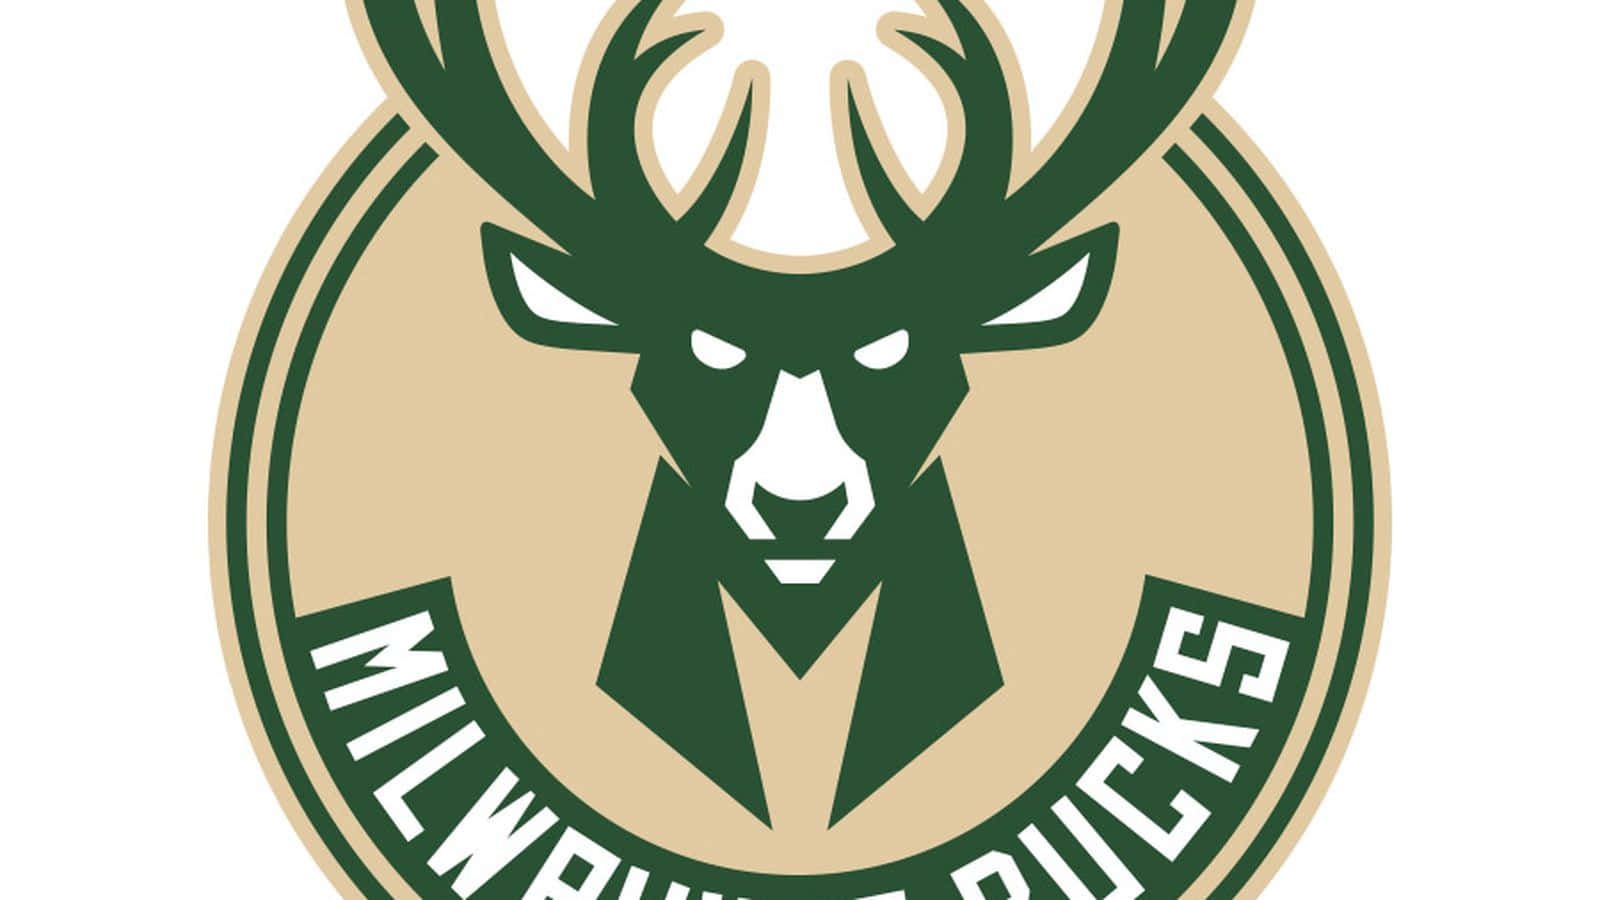 Ellogotipo De Los Milwaukee Bucks Engalana El Aspecto Futurista Del Equipo. Fondo de pantalla